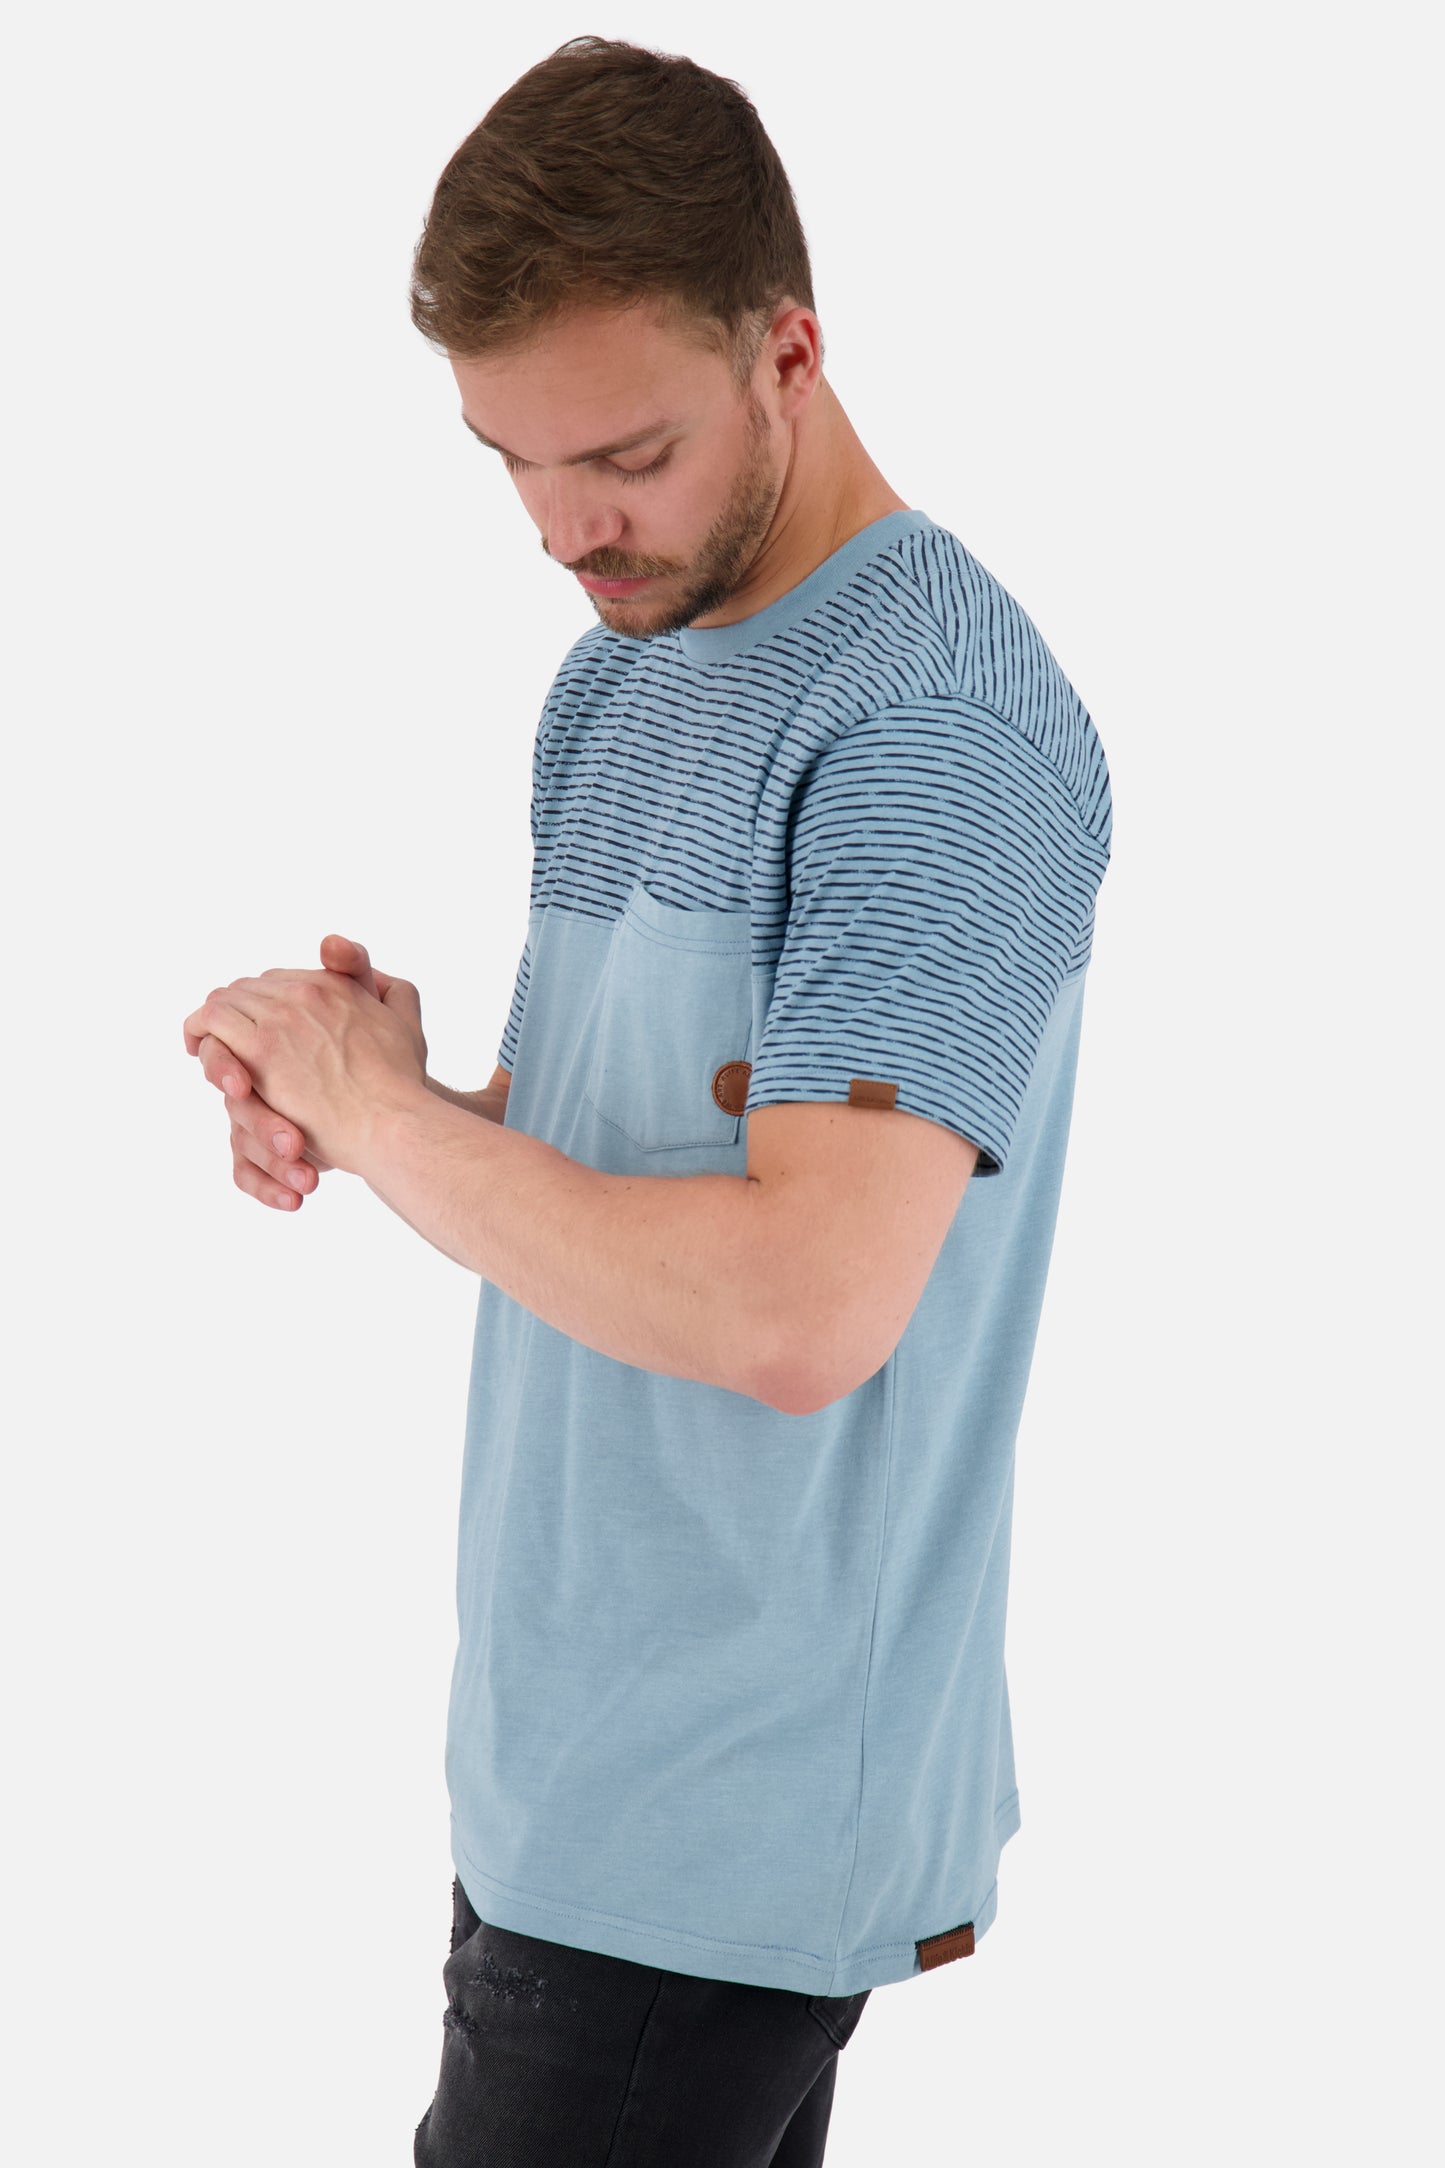 Sportliches Herren T-Shirt LeopoldAK Z mit Streifen Grau